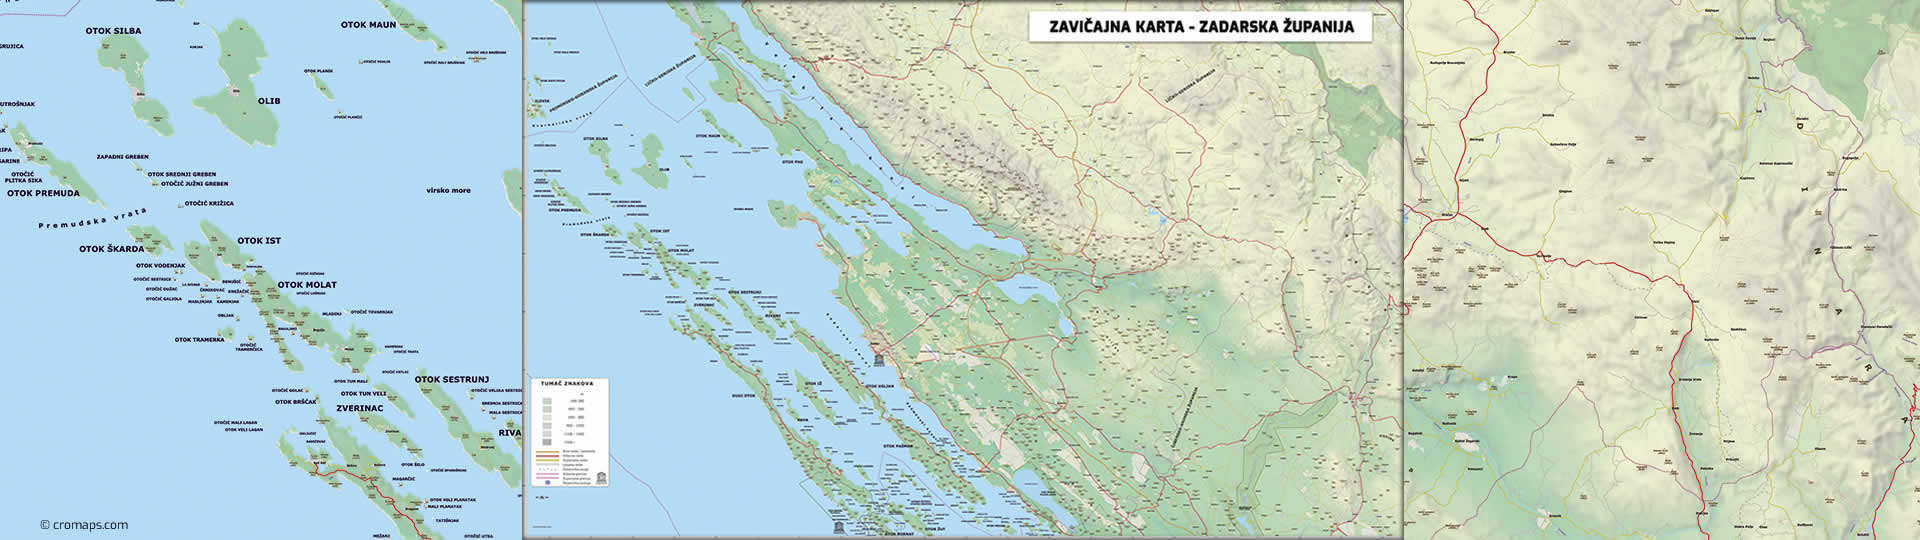 Zavičajna karta Zadarske županije